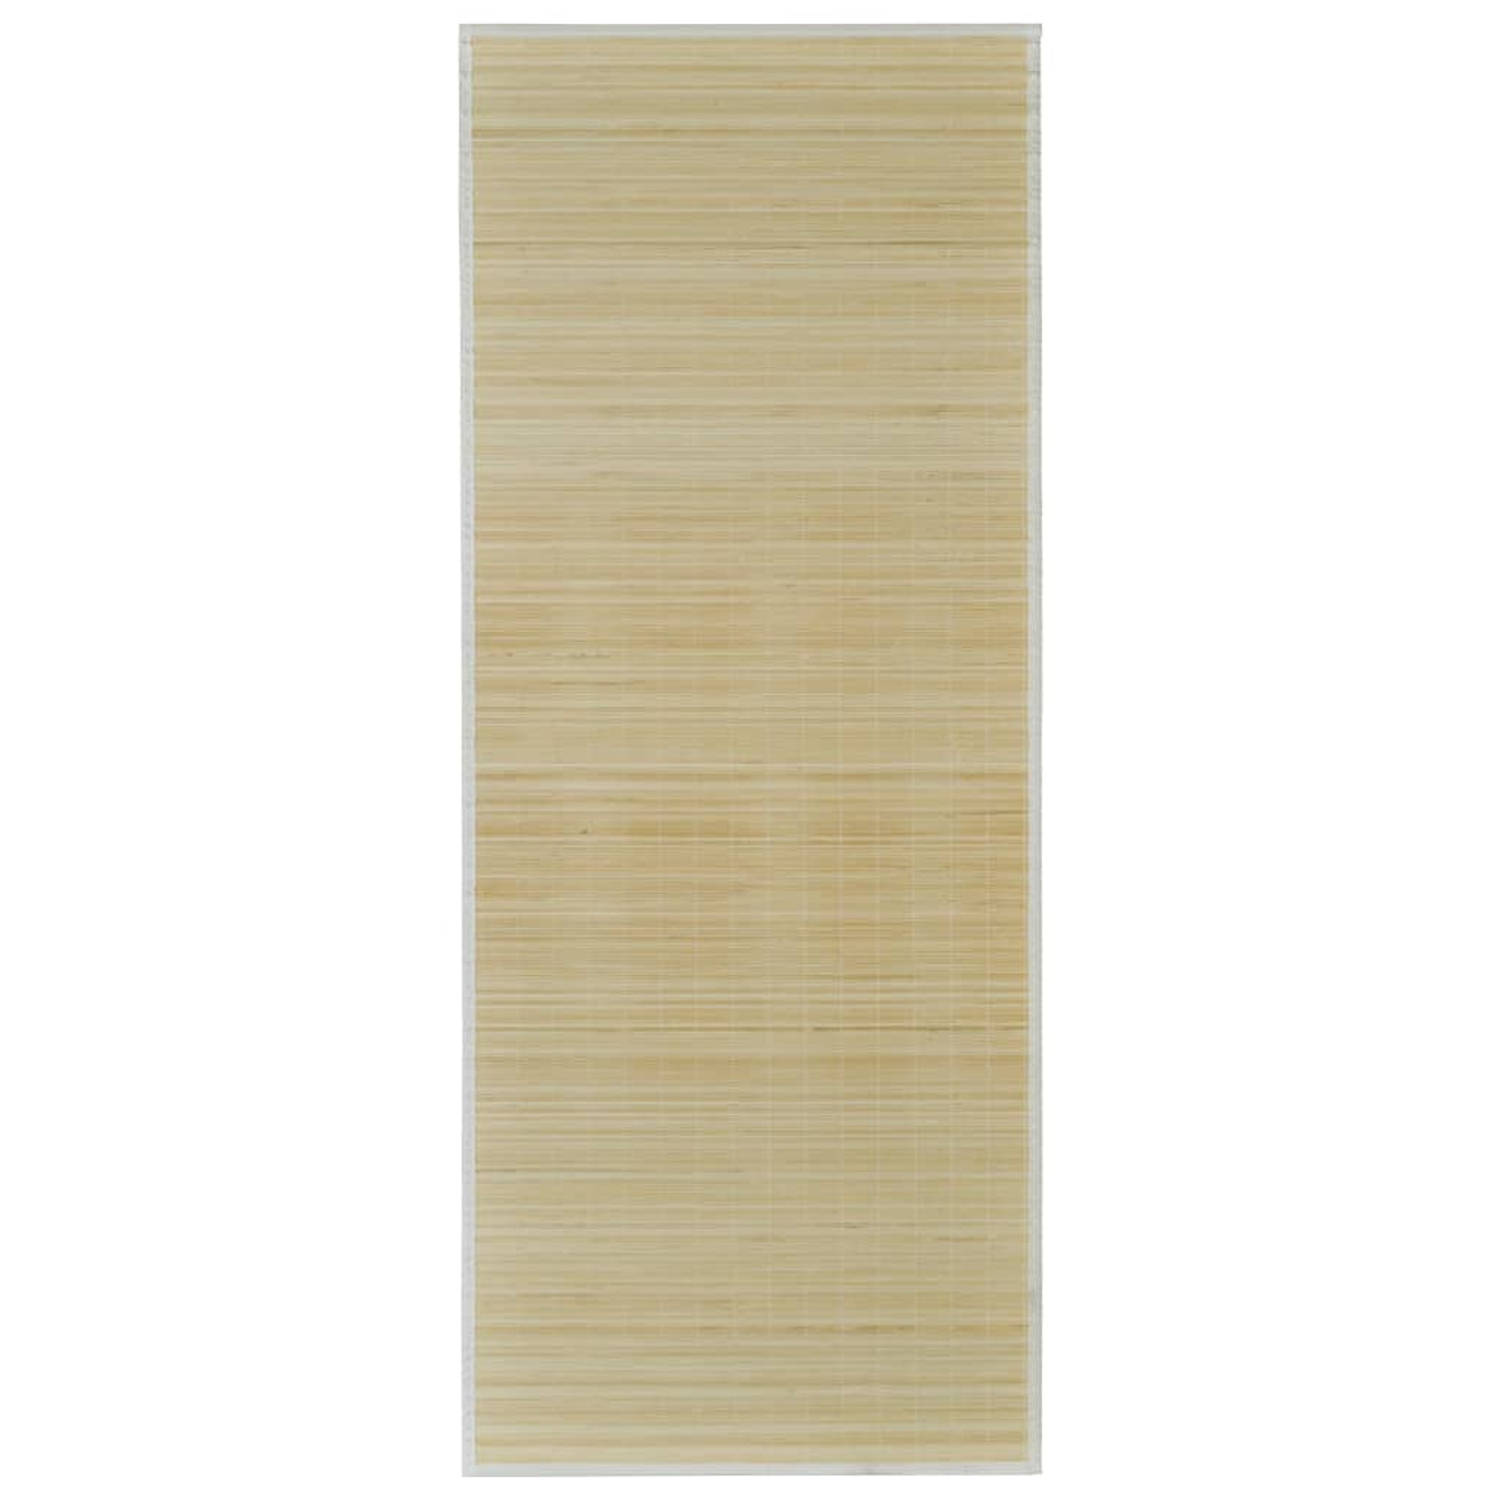 The Living Store Bamboo Mat - Neutrale bamboe kleur - 80 x 200 cm - PVC anti-slip onderkant